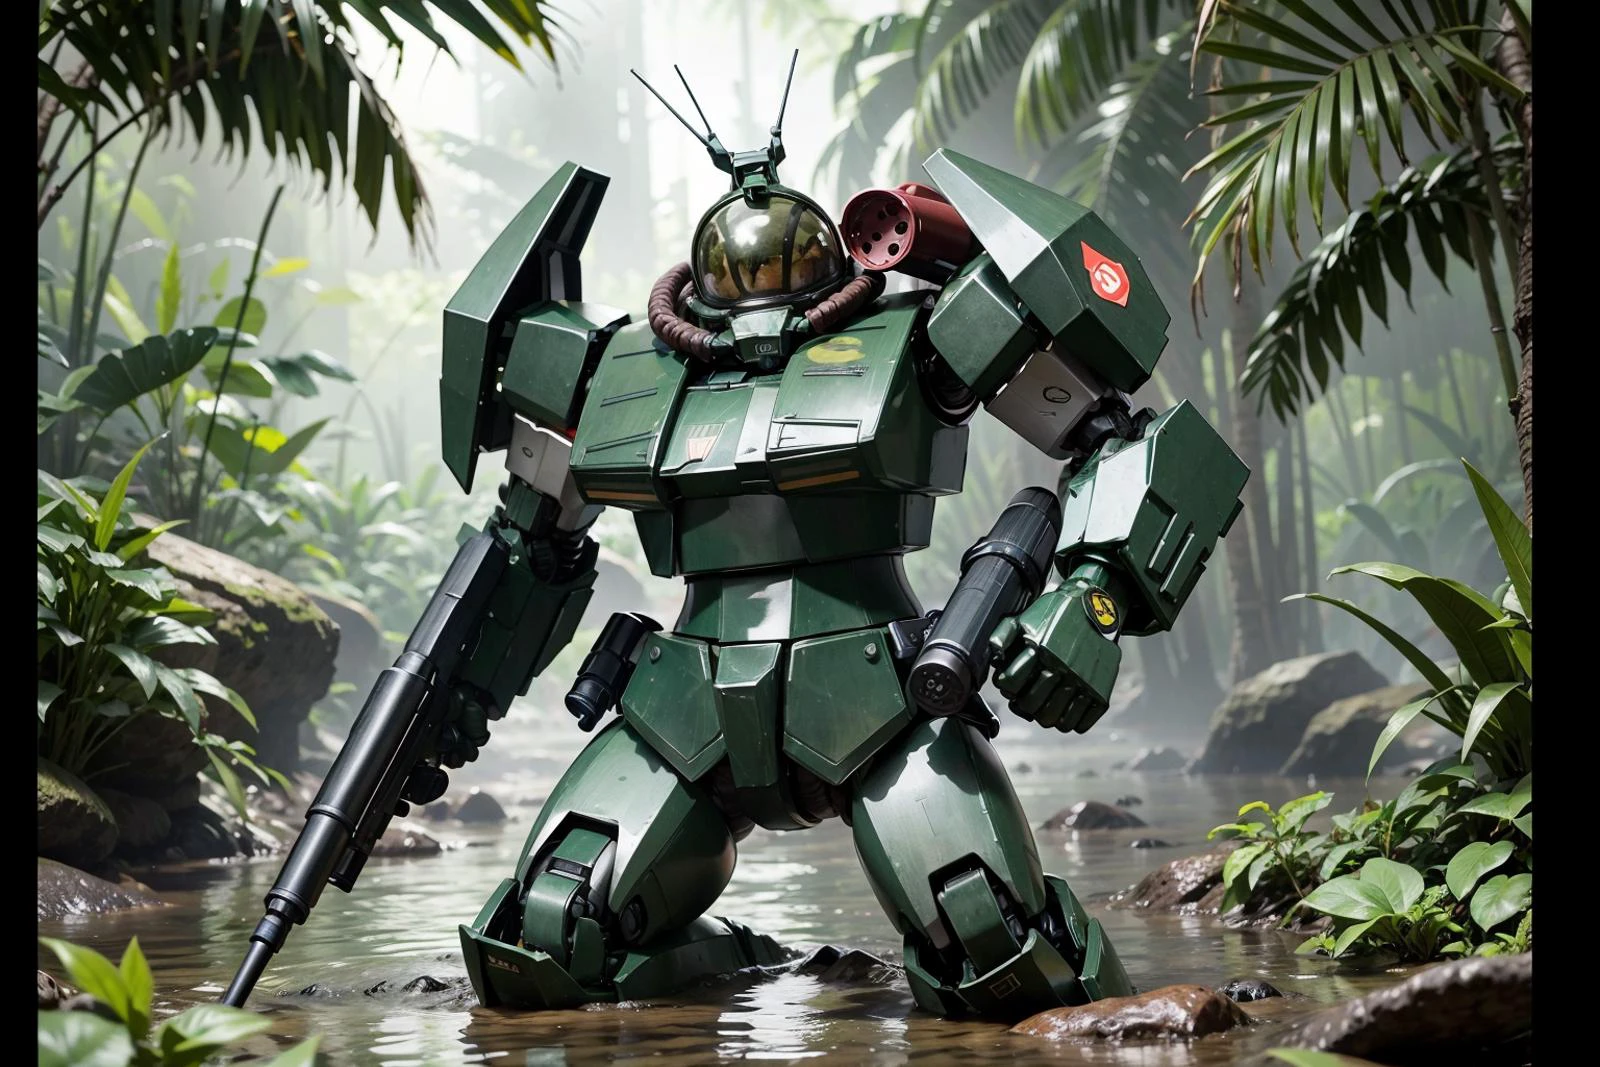 RAW-фотография гигантского робота с пистолетом в руке, пробираться по колено через тропическое болото